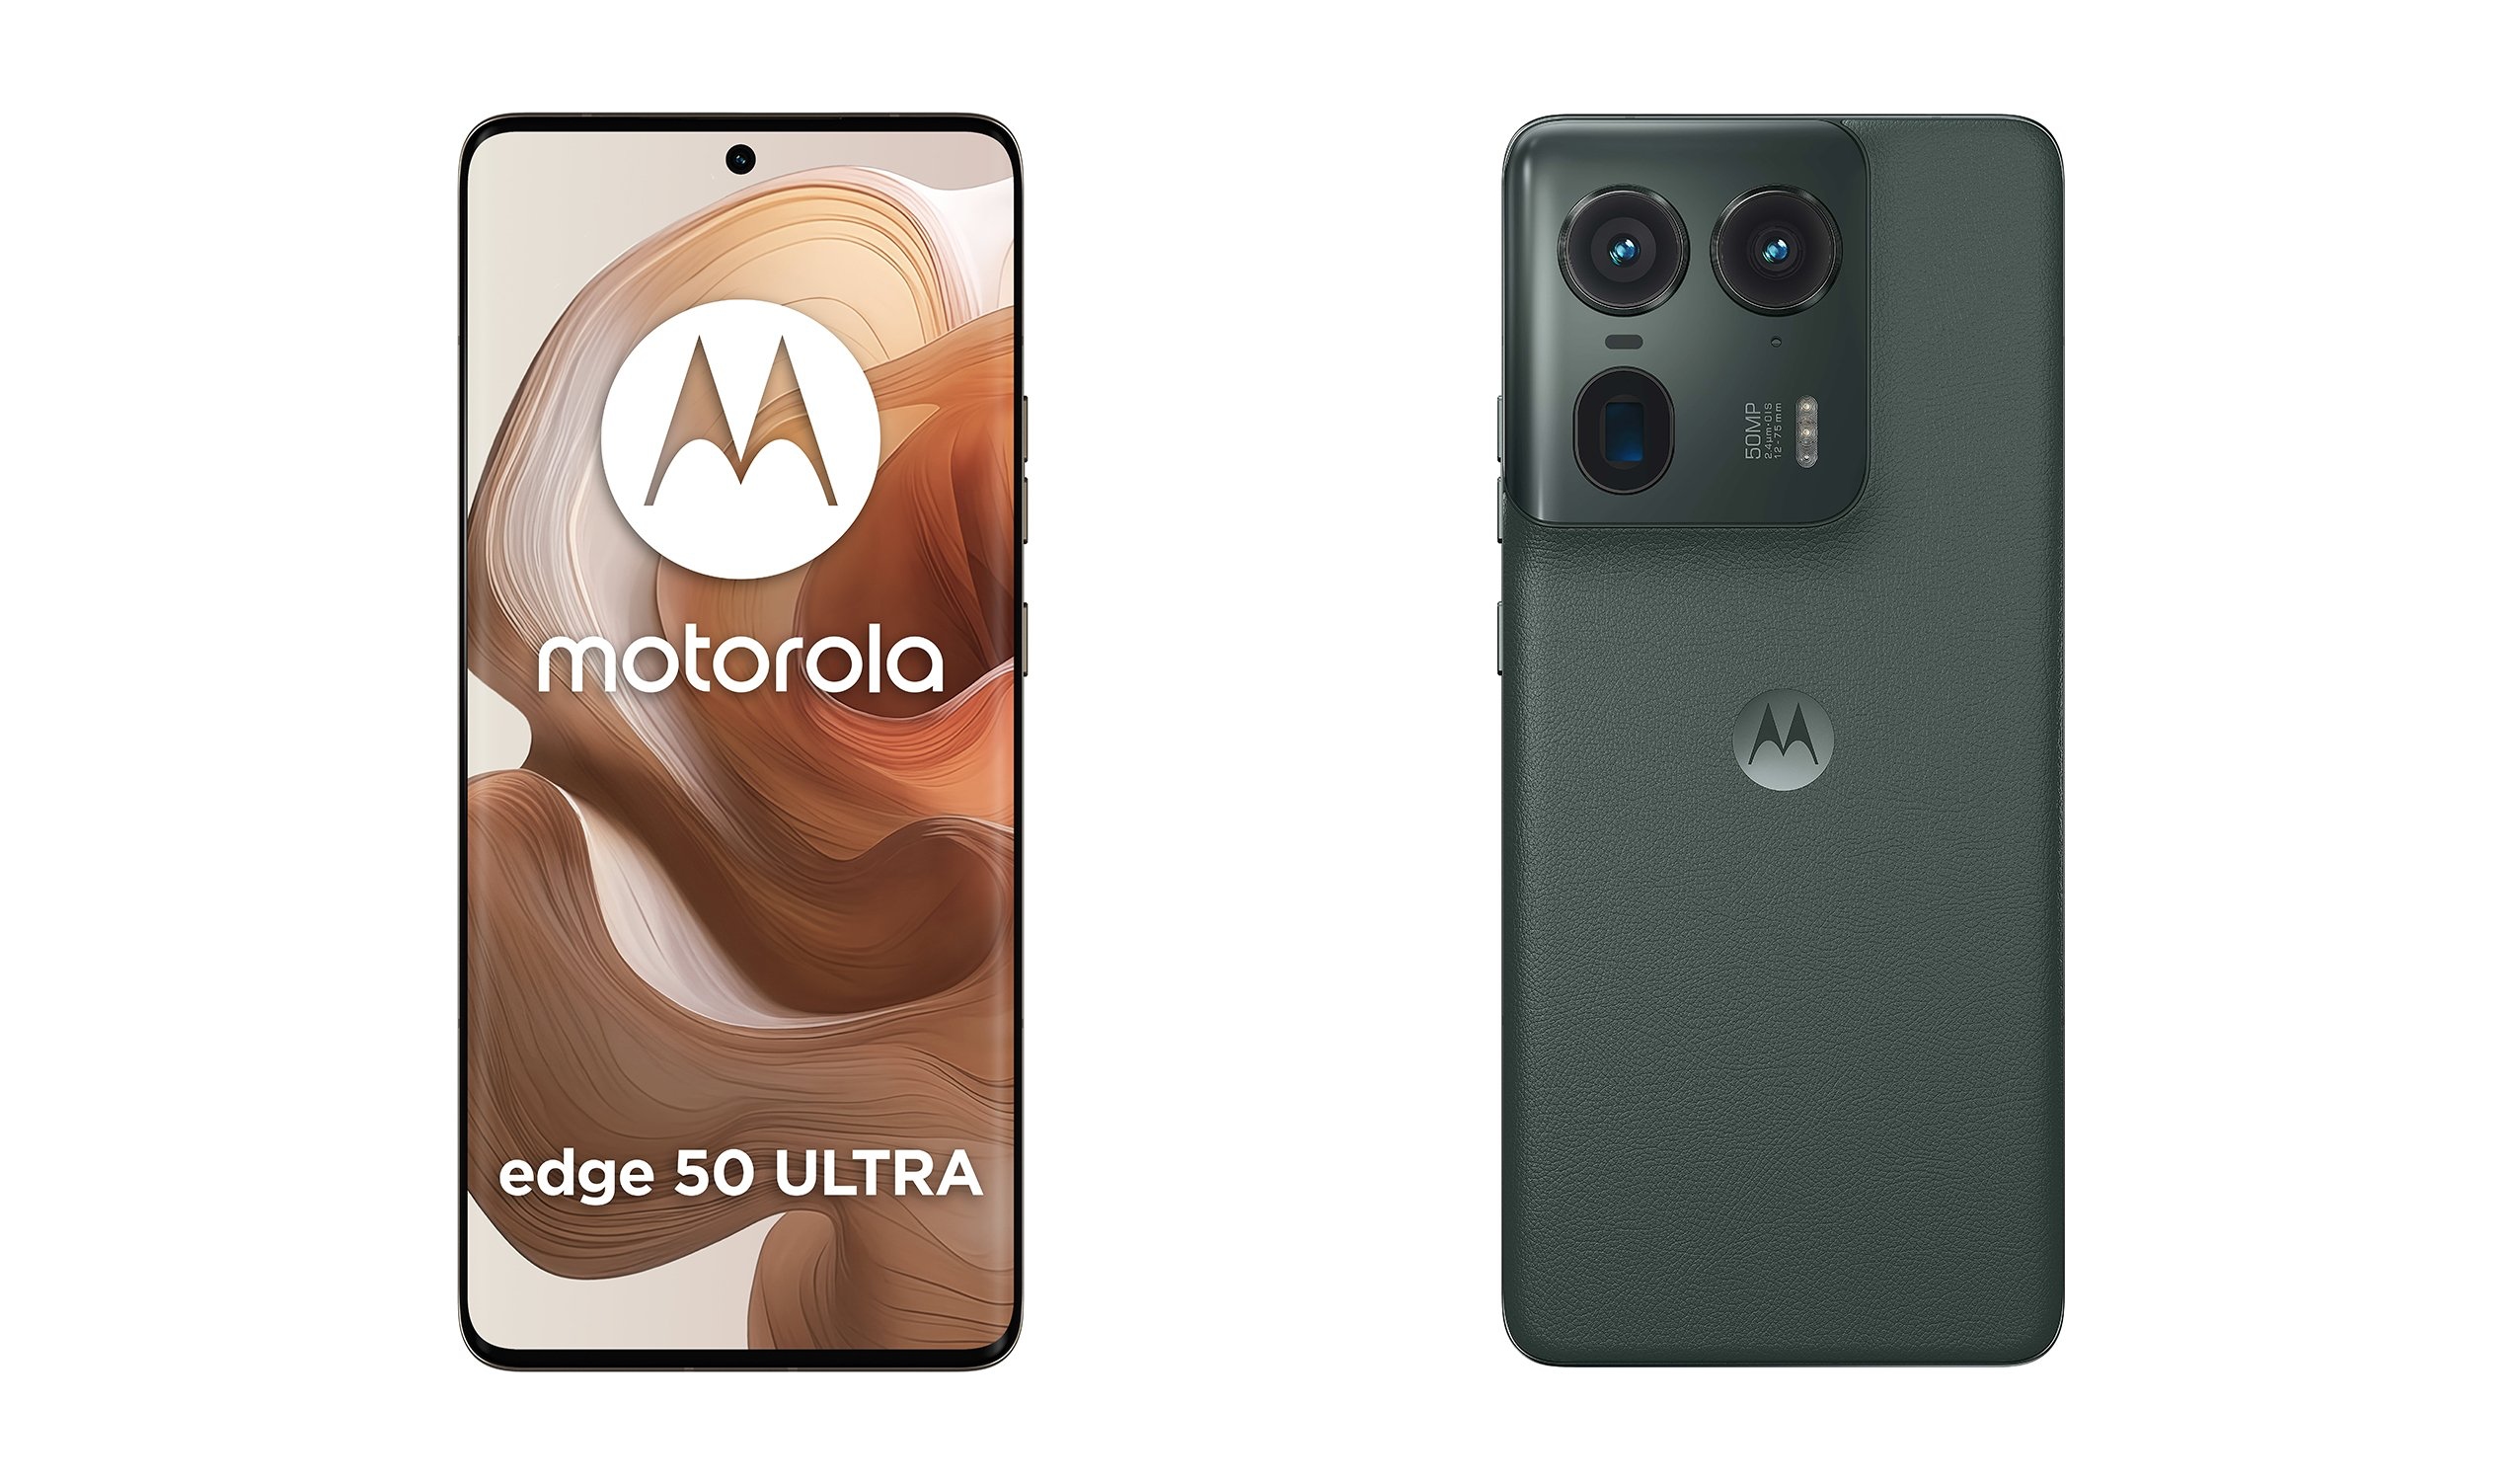 Schermo curvo e fotocamera periscopica: un insider rivela i video promozionali dell'ammiraglia Motorola Edge 50 Ultra